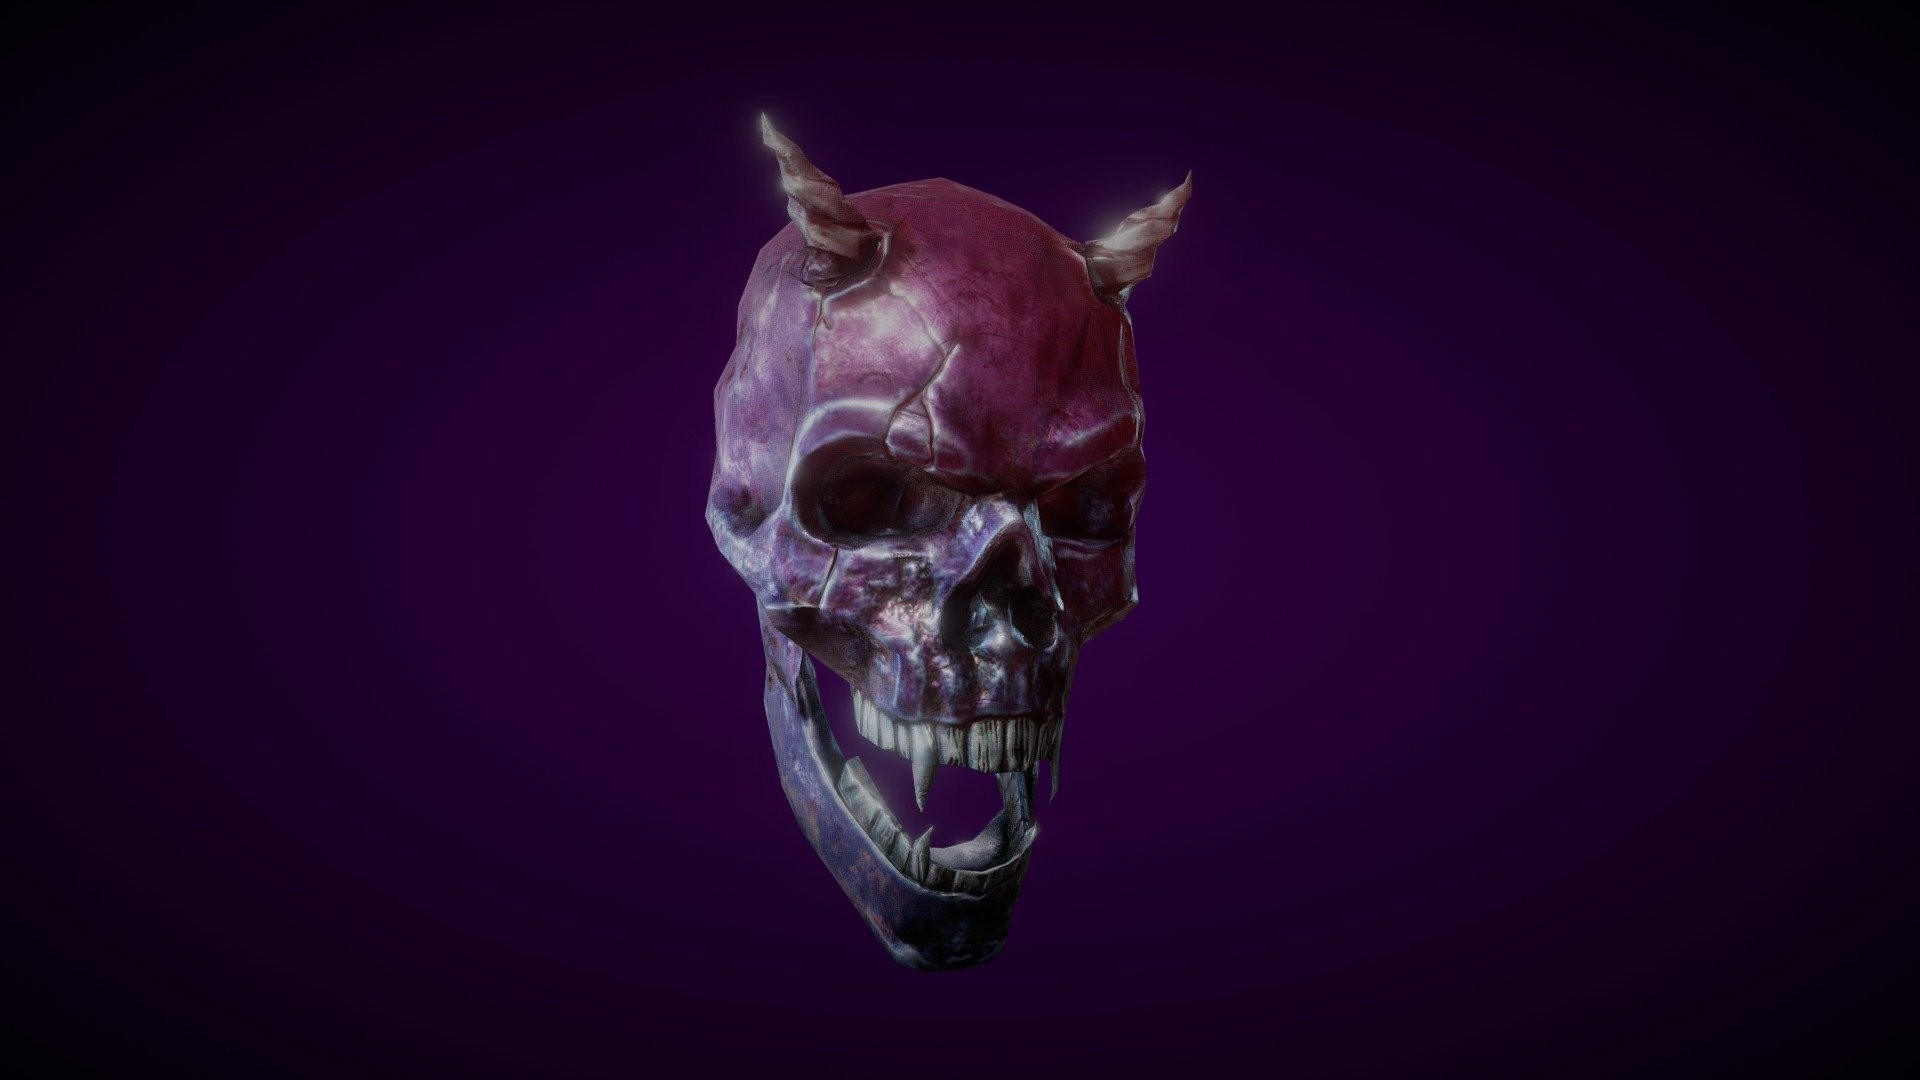 Vampire Skull 3d Model 1920x1080